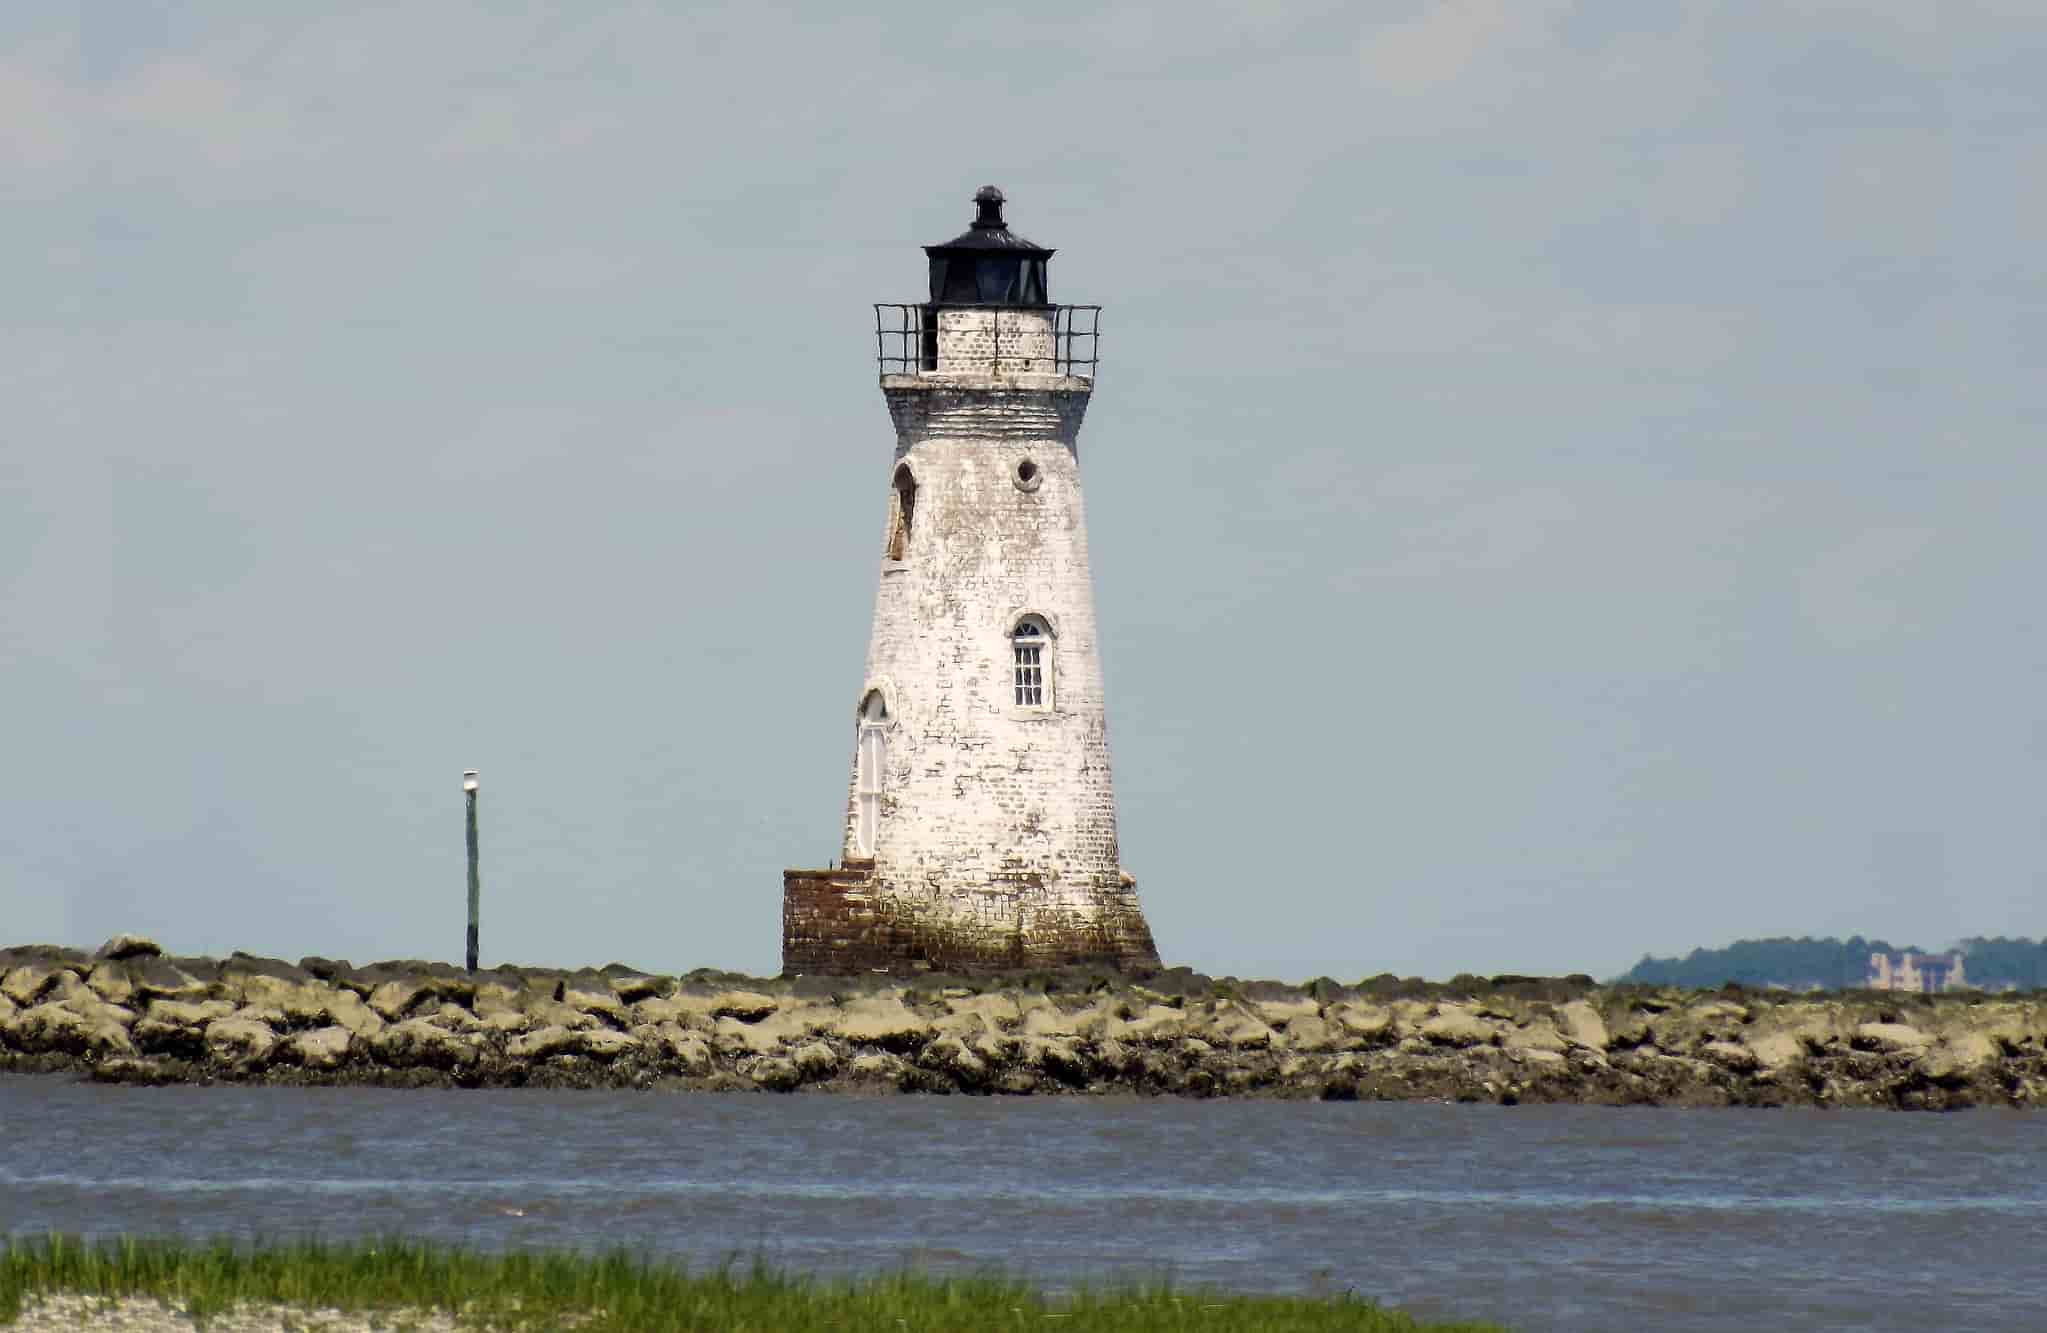 The cockspur island lighthouse